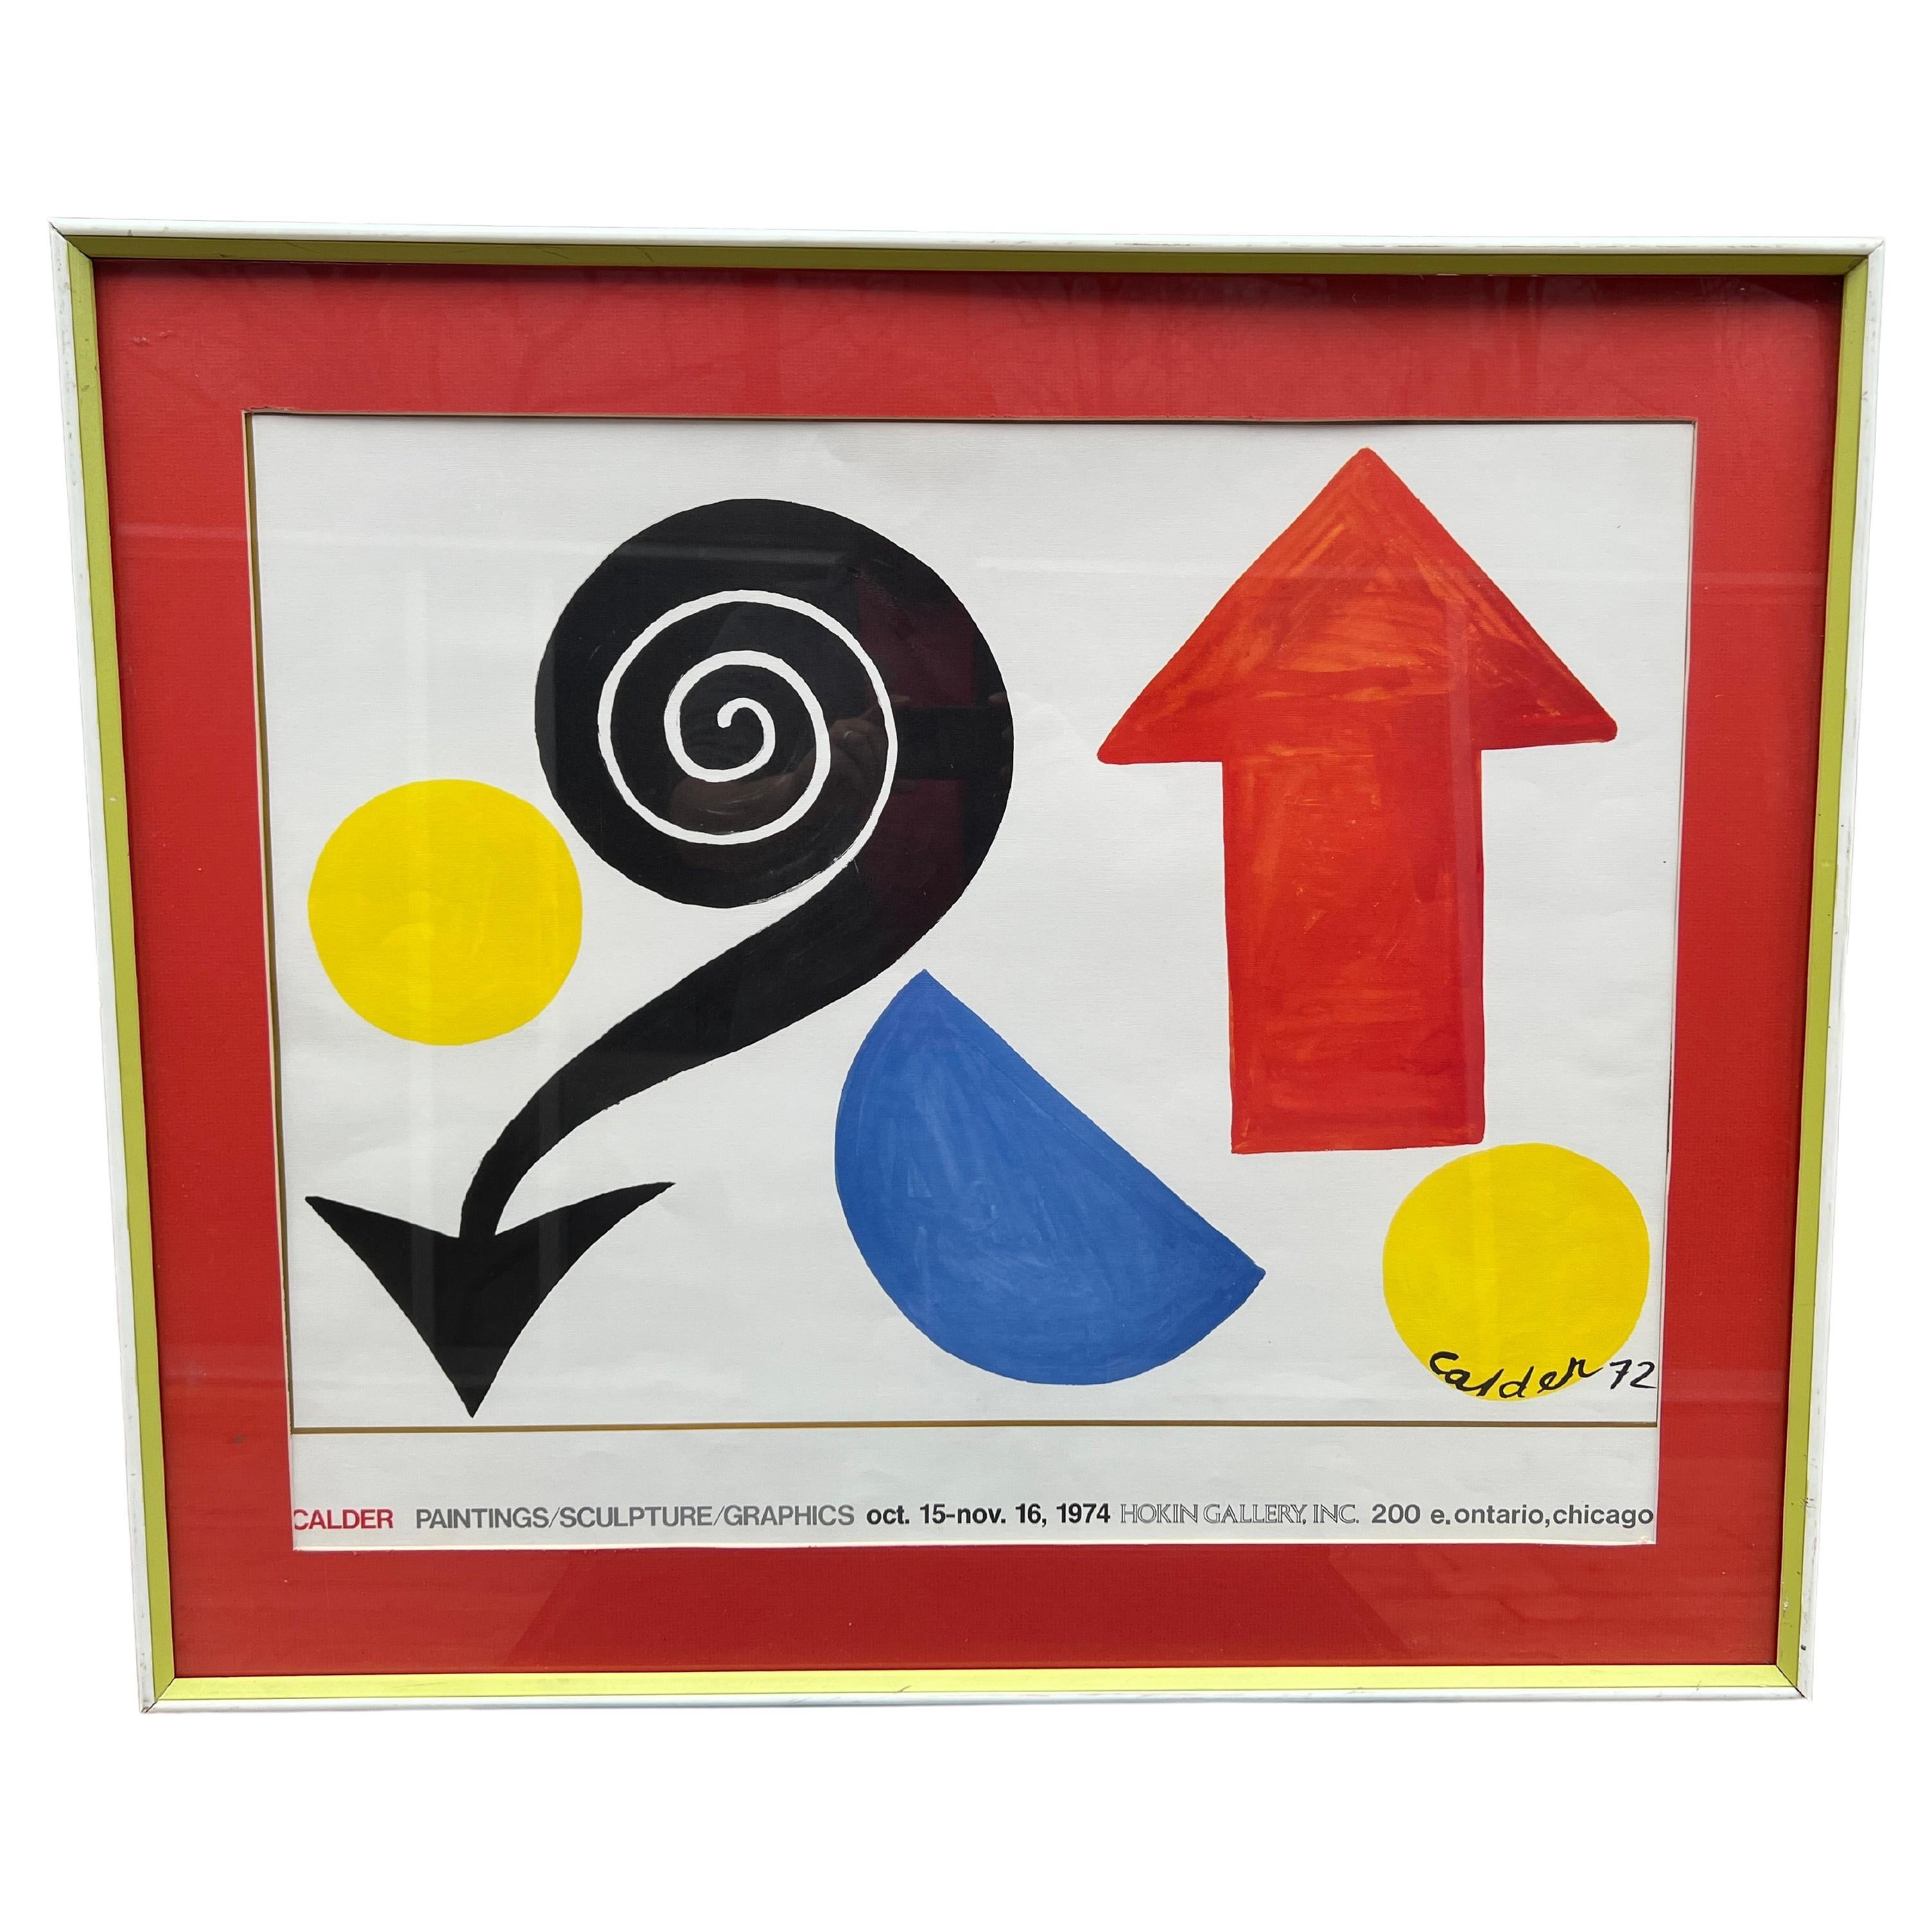 Affiche d'exposition « Paintings / Sculpture / Graphics » d'Alexander Calder, 1974 